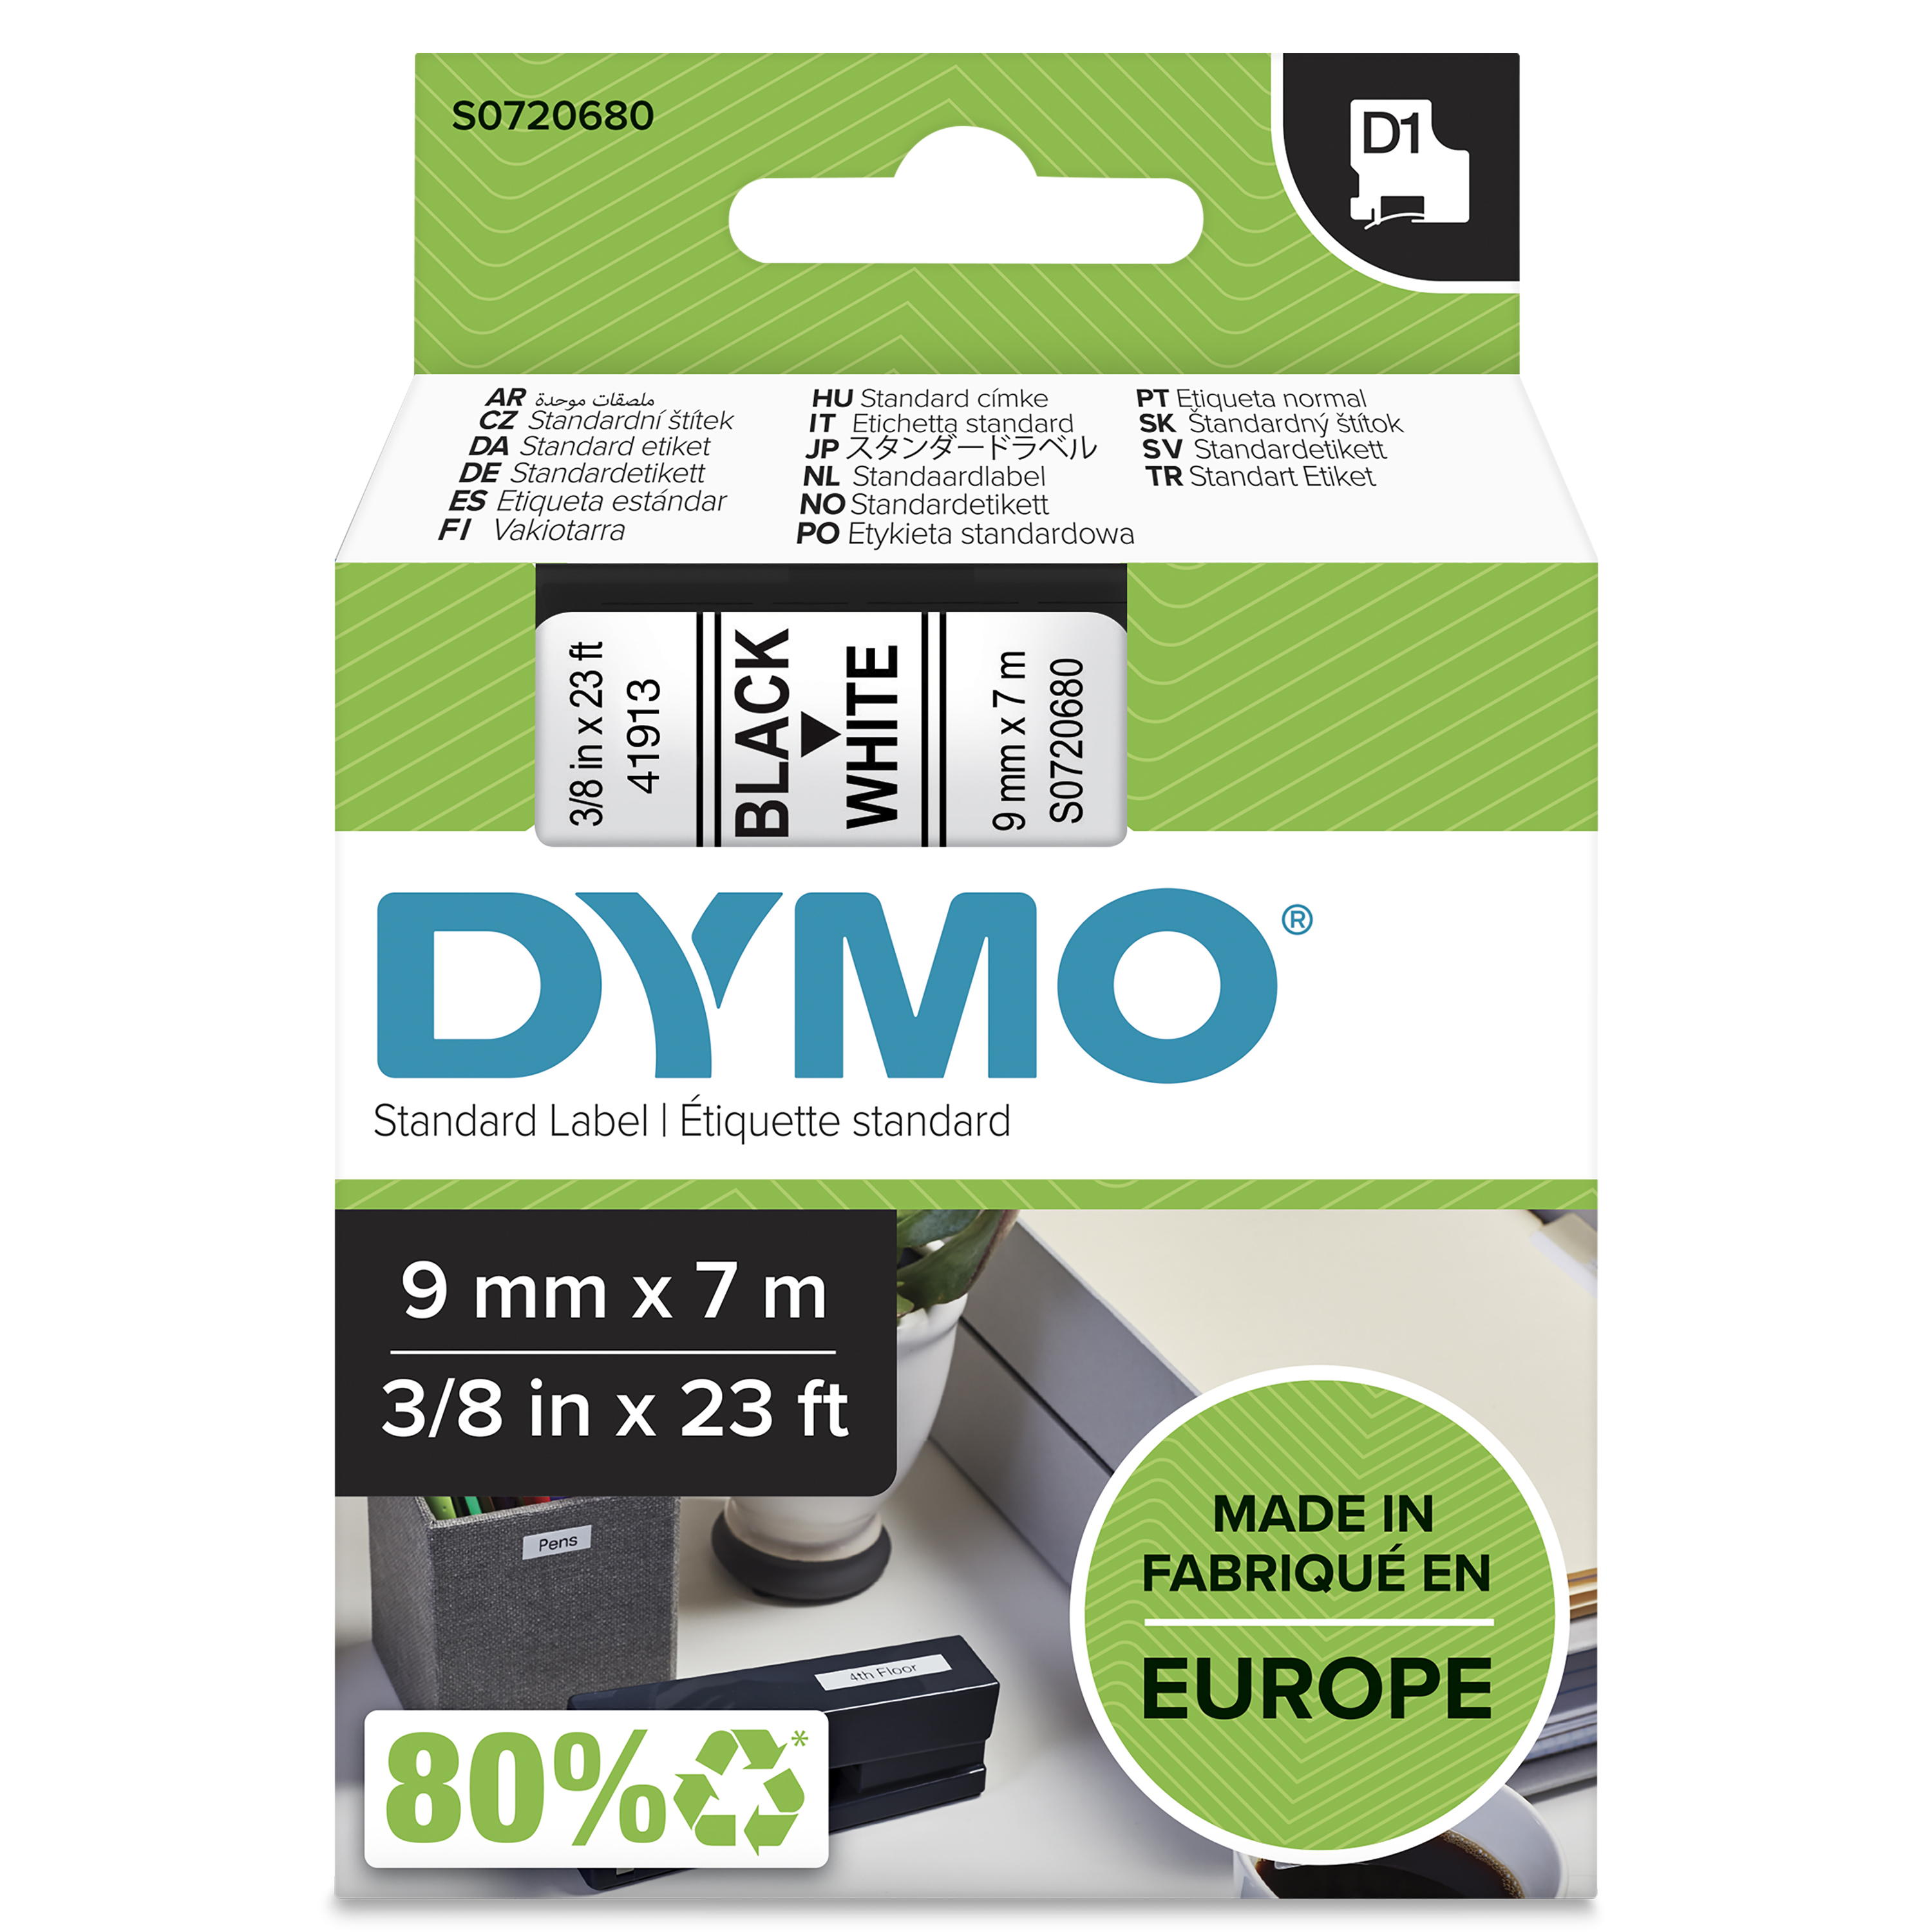 DYMO - D1® Tape 9mm x 7m black on white (S0720680) - Kontor og skoleutstyr